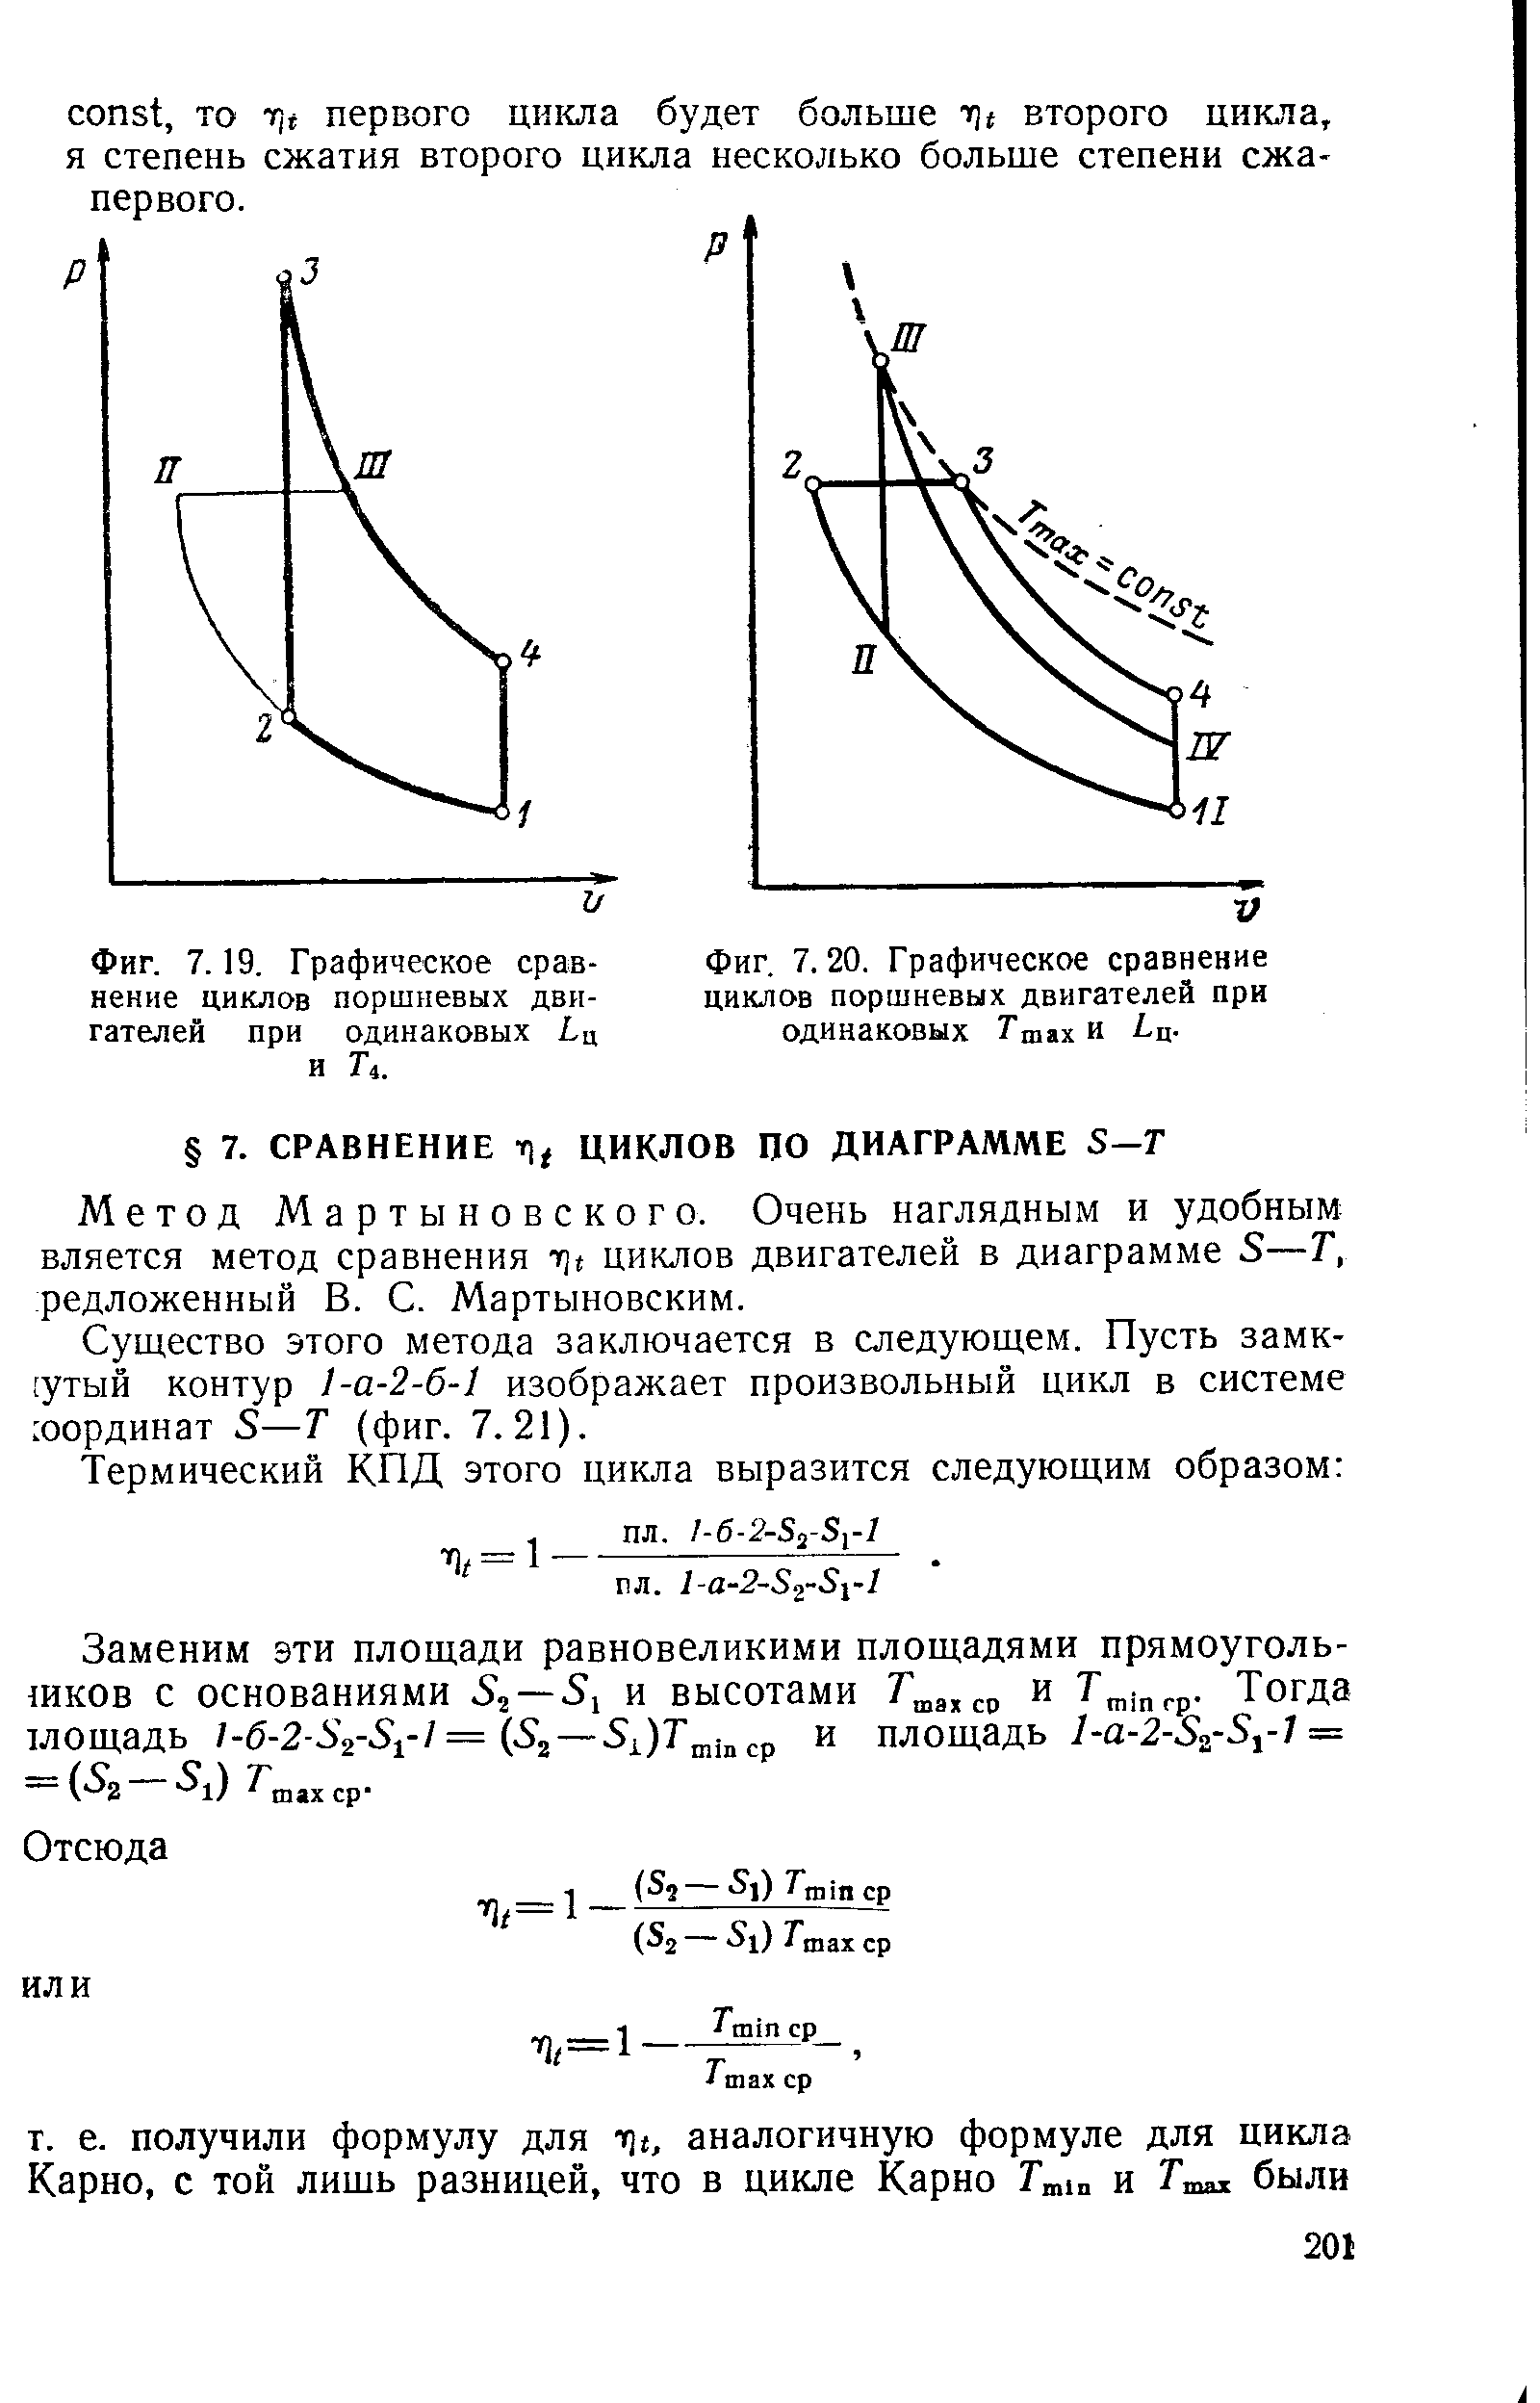 Фиг. 7.19. Графическое сравнение циклов поршневых двигателей при одинаковых Ьц и Г4.
